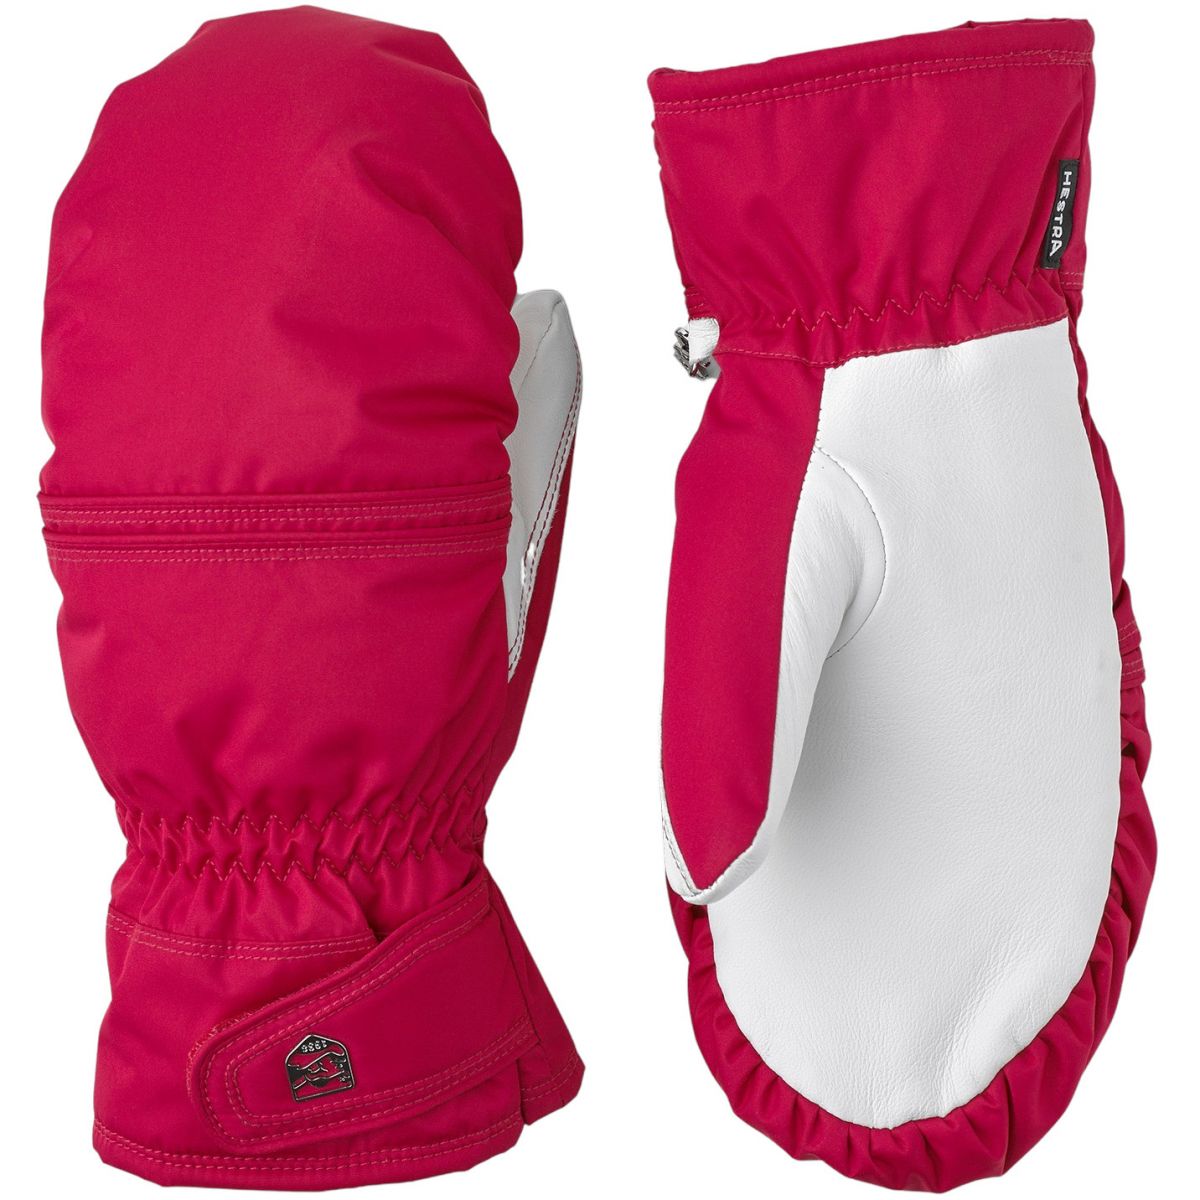 Brug Hestra Primaloft Leather, skiluffer, dame, pink/hvid til en forbedret oplevelse